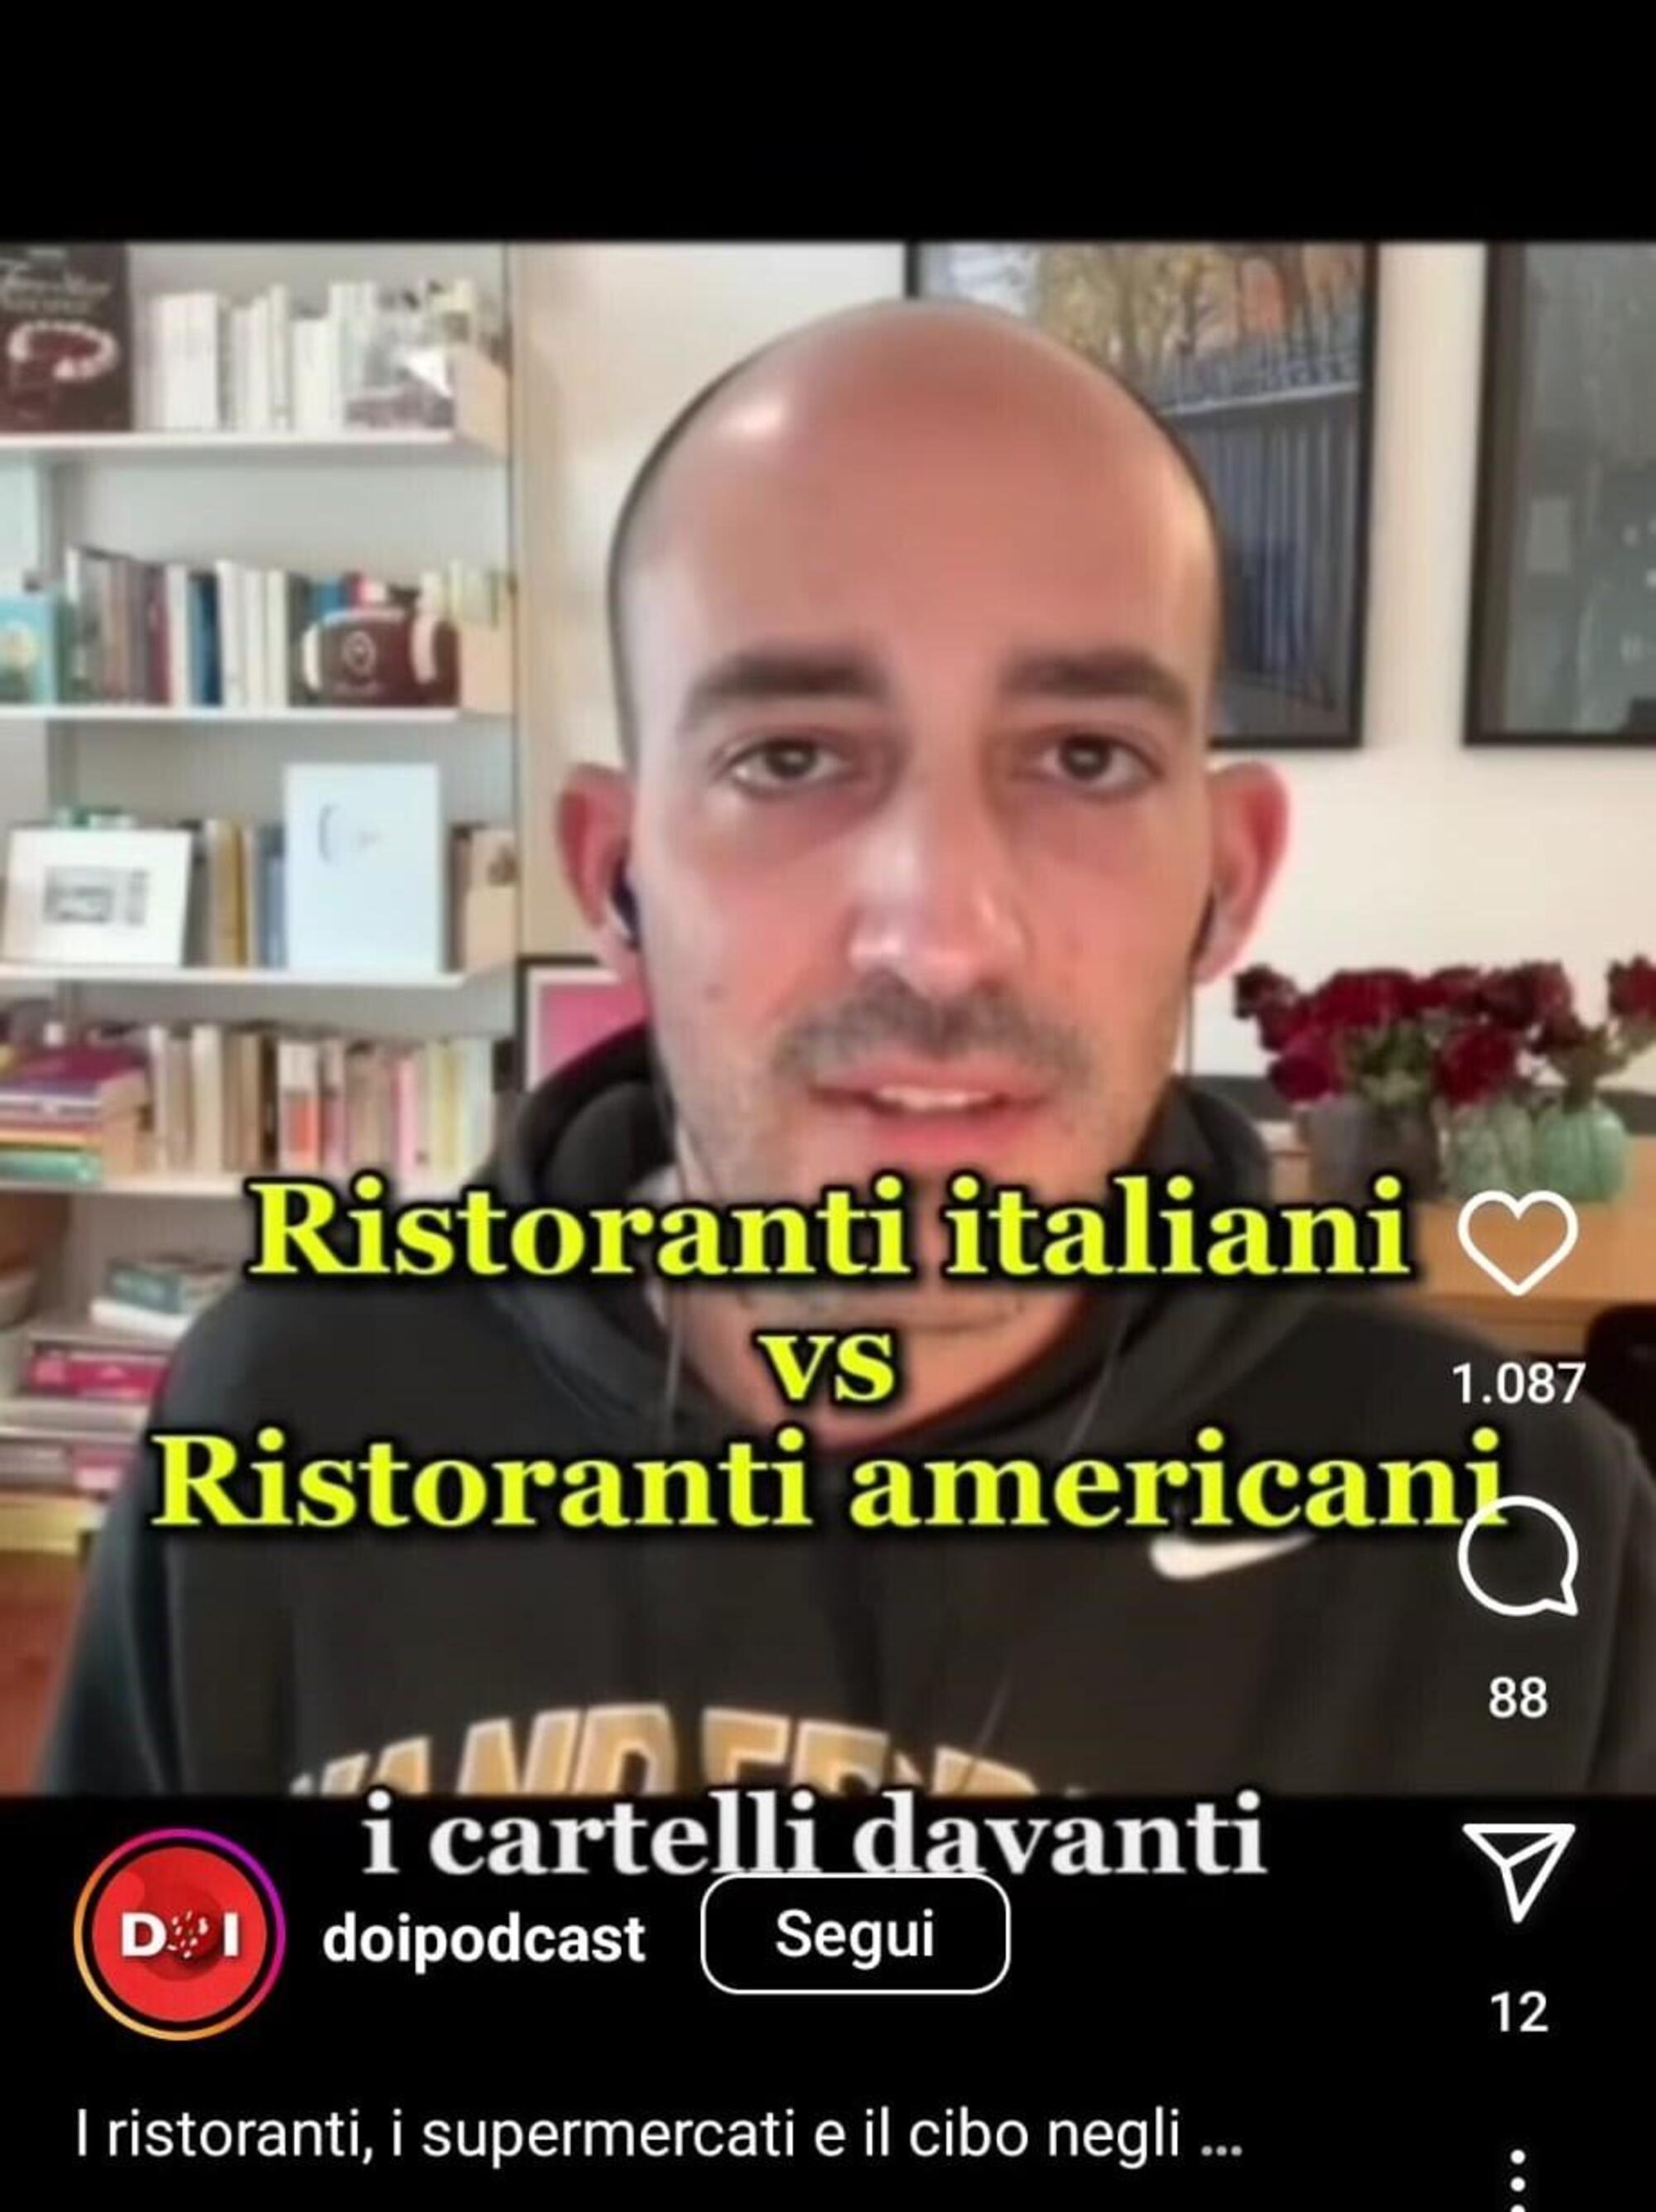 Il video commento di Francesco Costa sulle differenze tra ristoranti italiani e americani